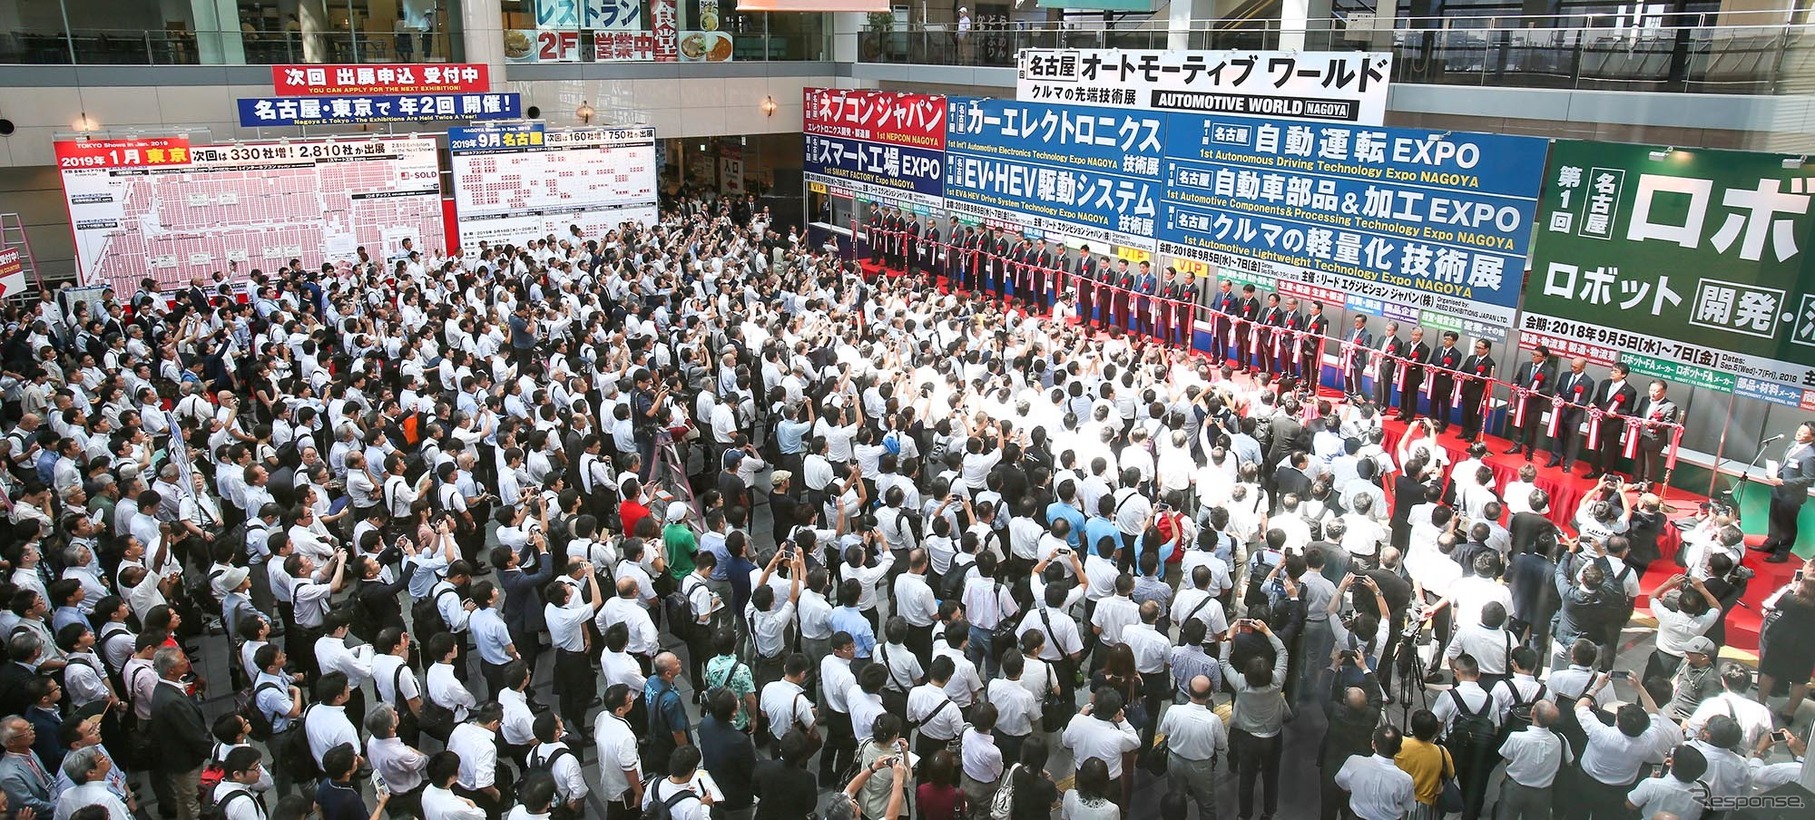 初開催となった「名古屋オートモーティブワールド 」のオープニングセレモニー。黒山の人だかりに、出展企業も驚いた。